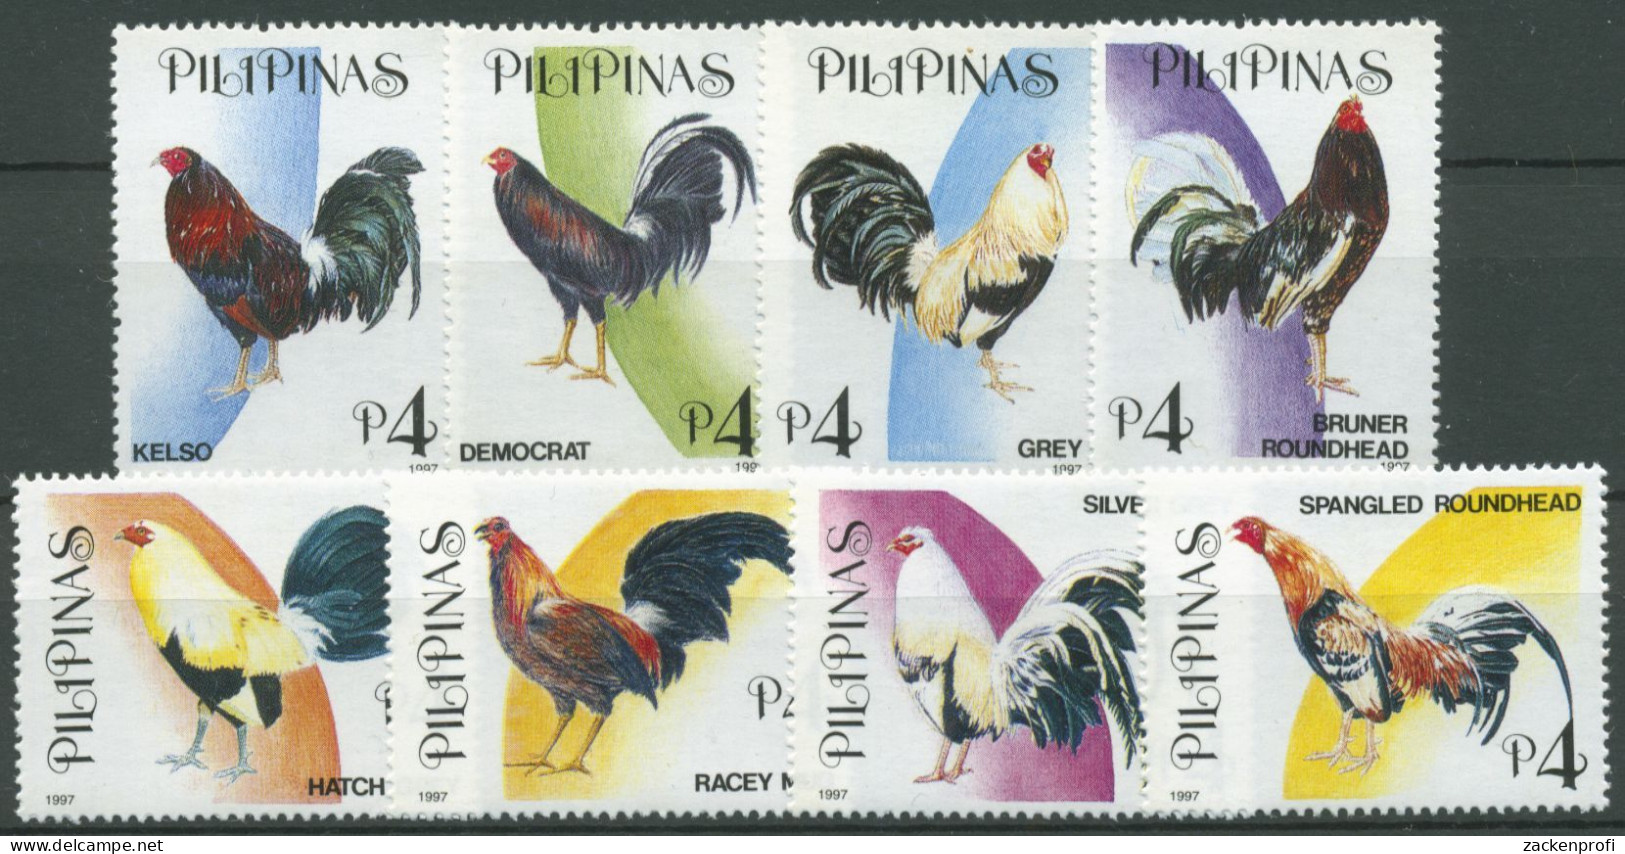 Philippinen 1997 Tiere Kampfhähne 2853/60 Postfrisch - Filipinas